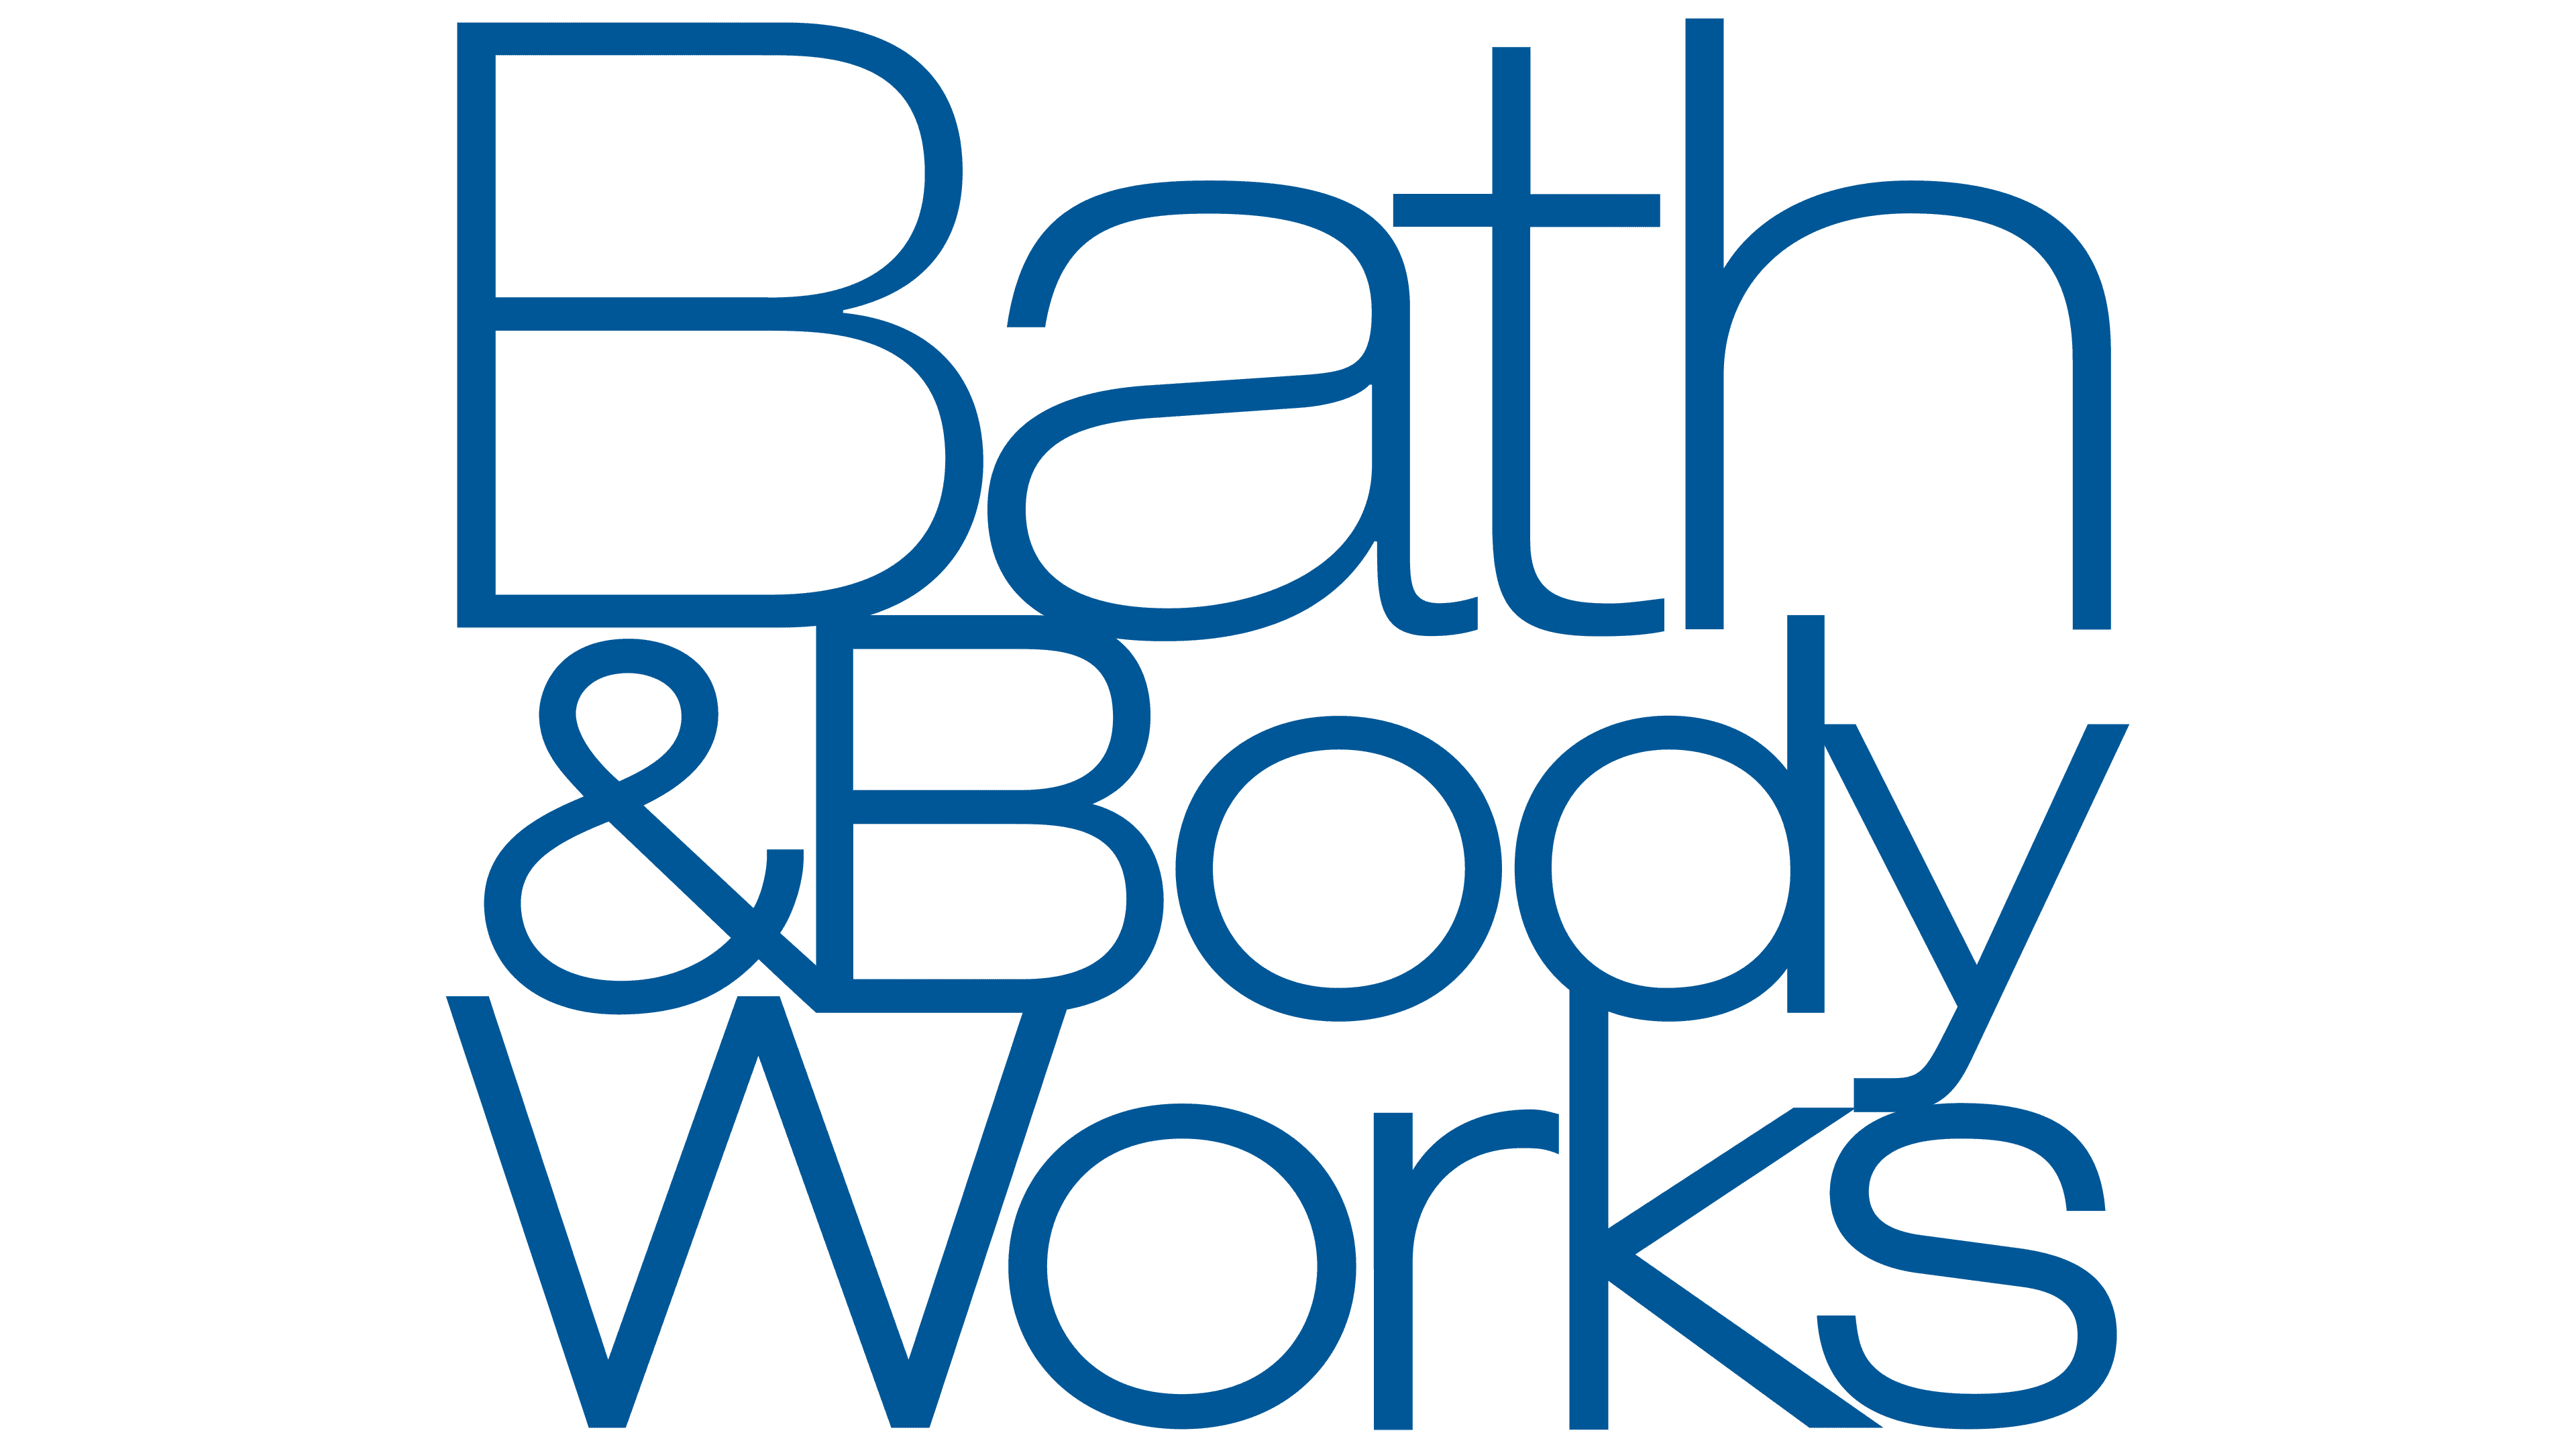 Bath-Body-Works-Emblem